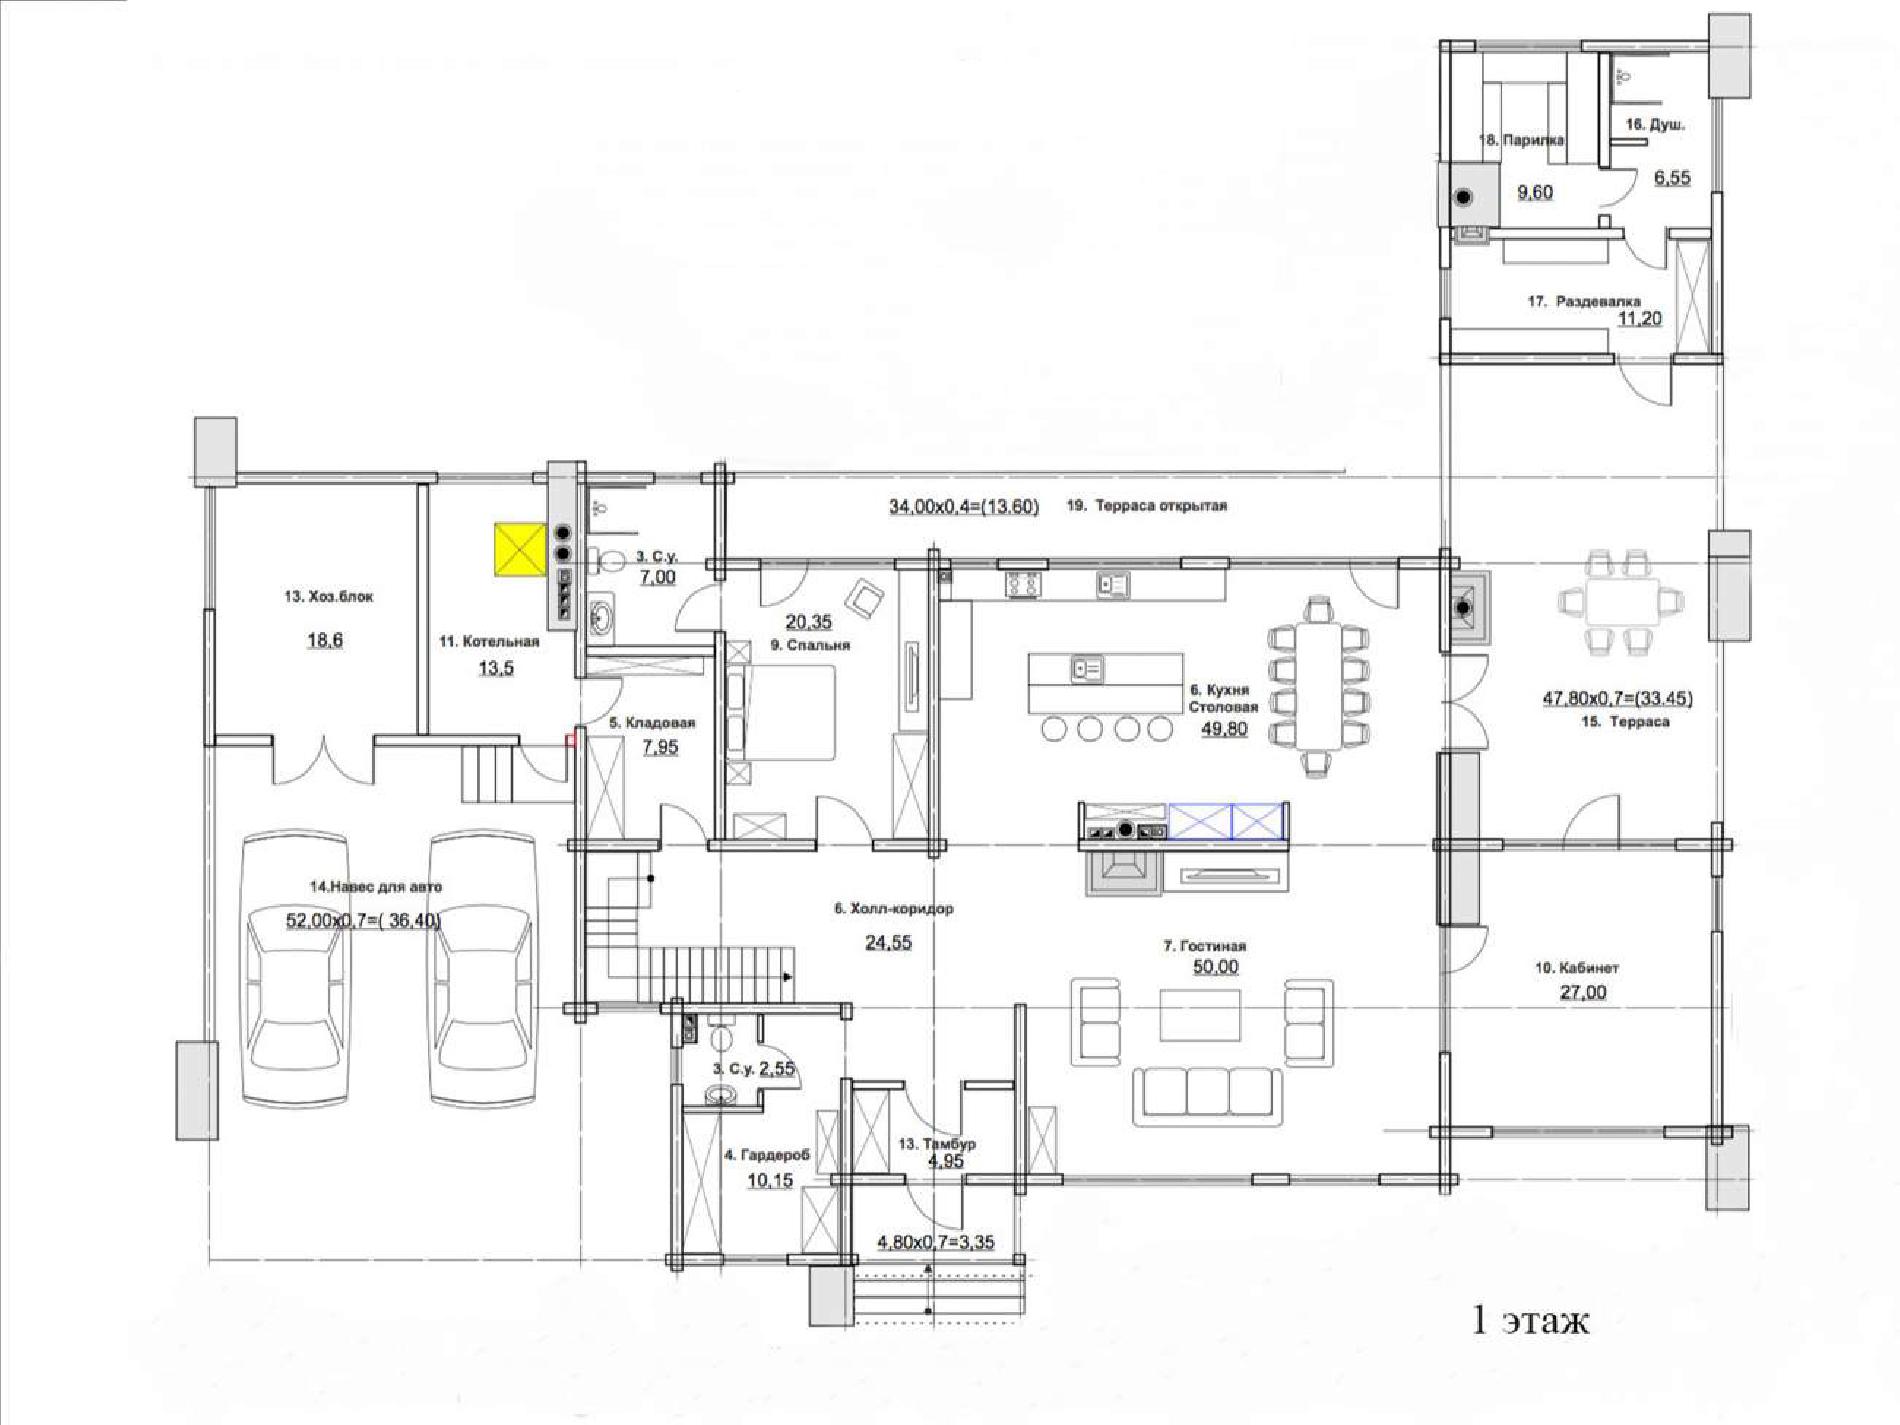 Планировка проекта дома №rh-616 rh-616 (1)p.jpg